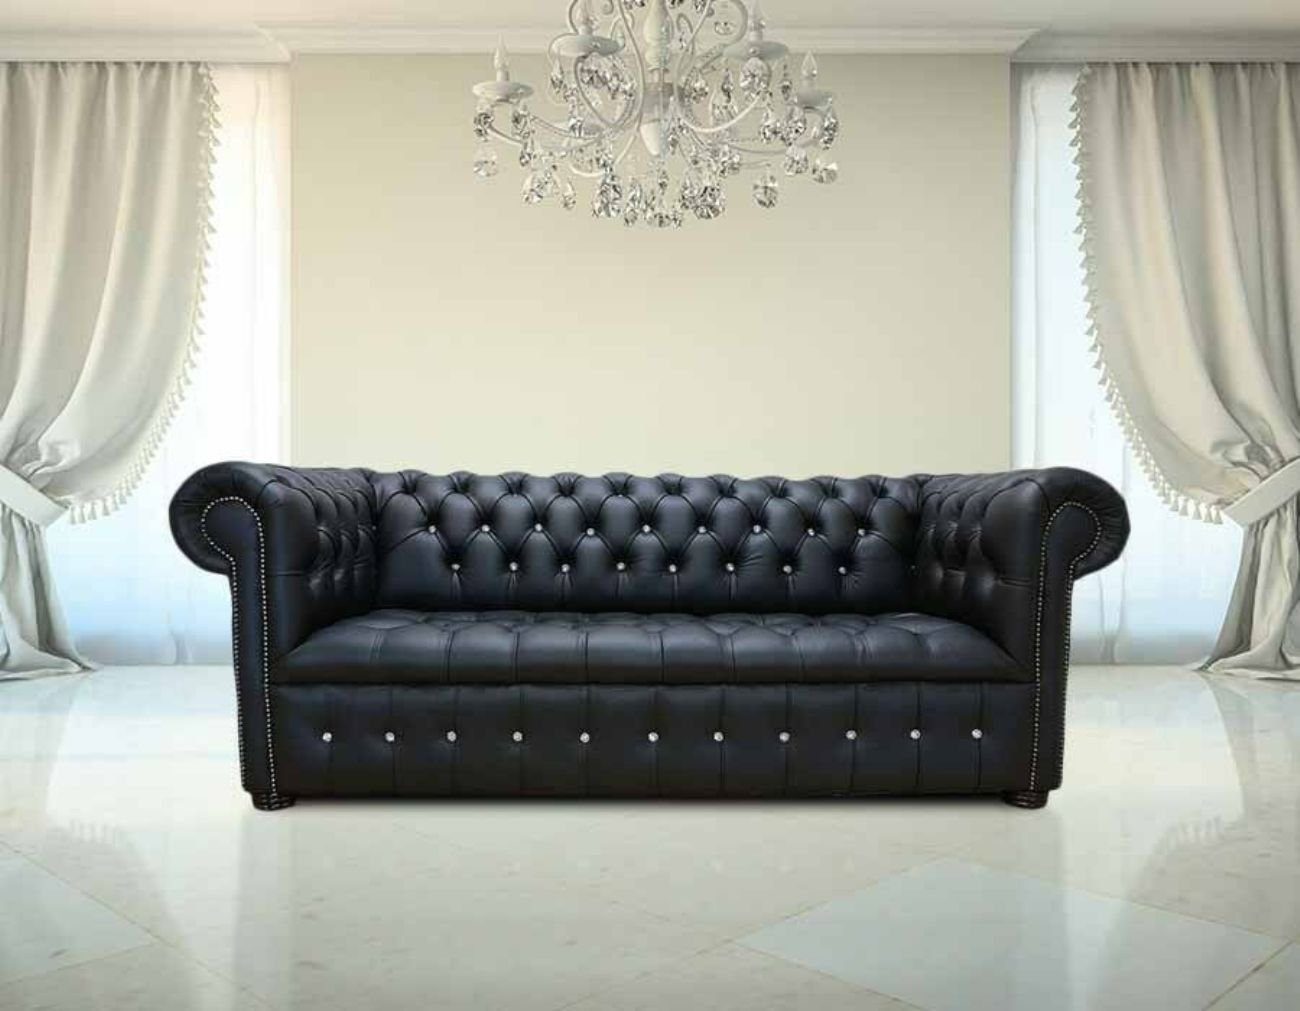 JVmoebel 3-Sitzer Chesterfield Sofa Couch Polster Garnitur 3 Sitzer Sofas Klassisch, Made in Europe